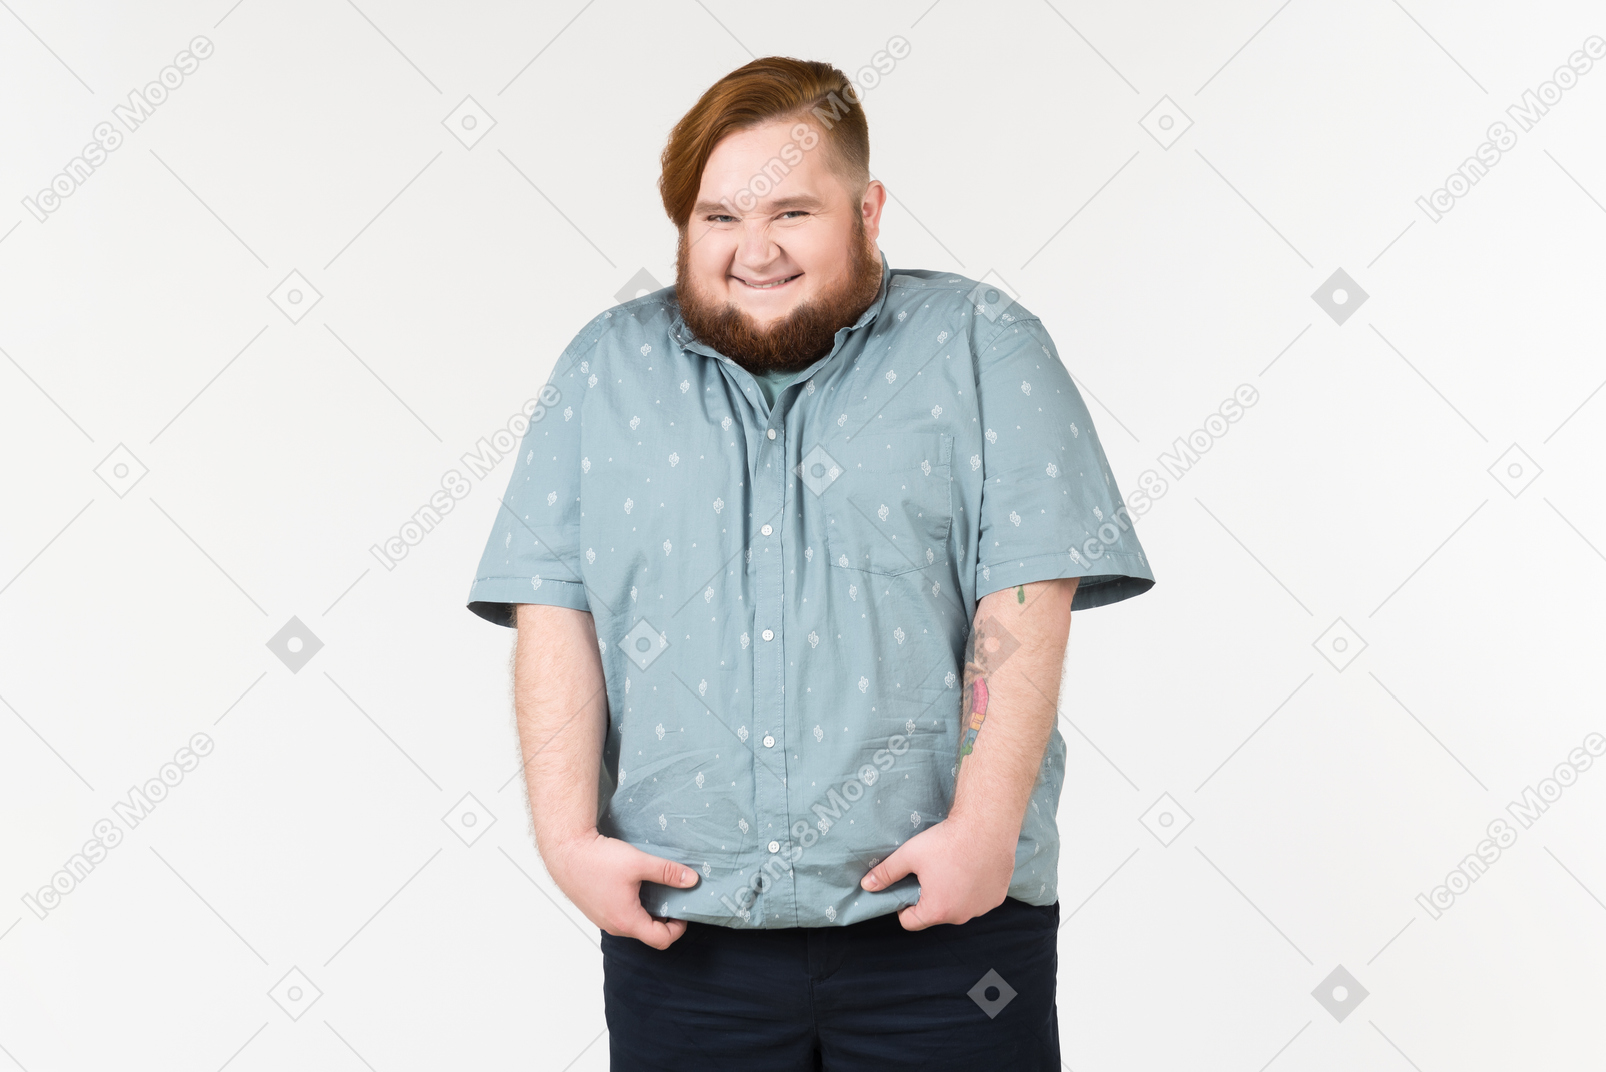 Un hombre gordo sonriendo tímidamente